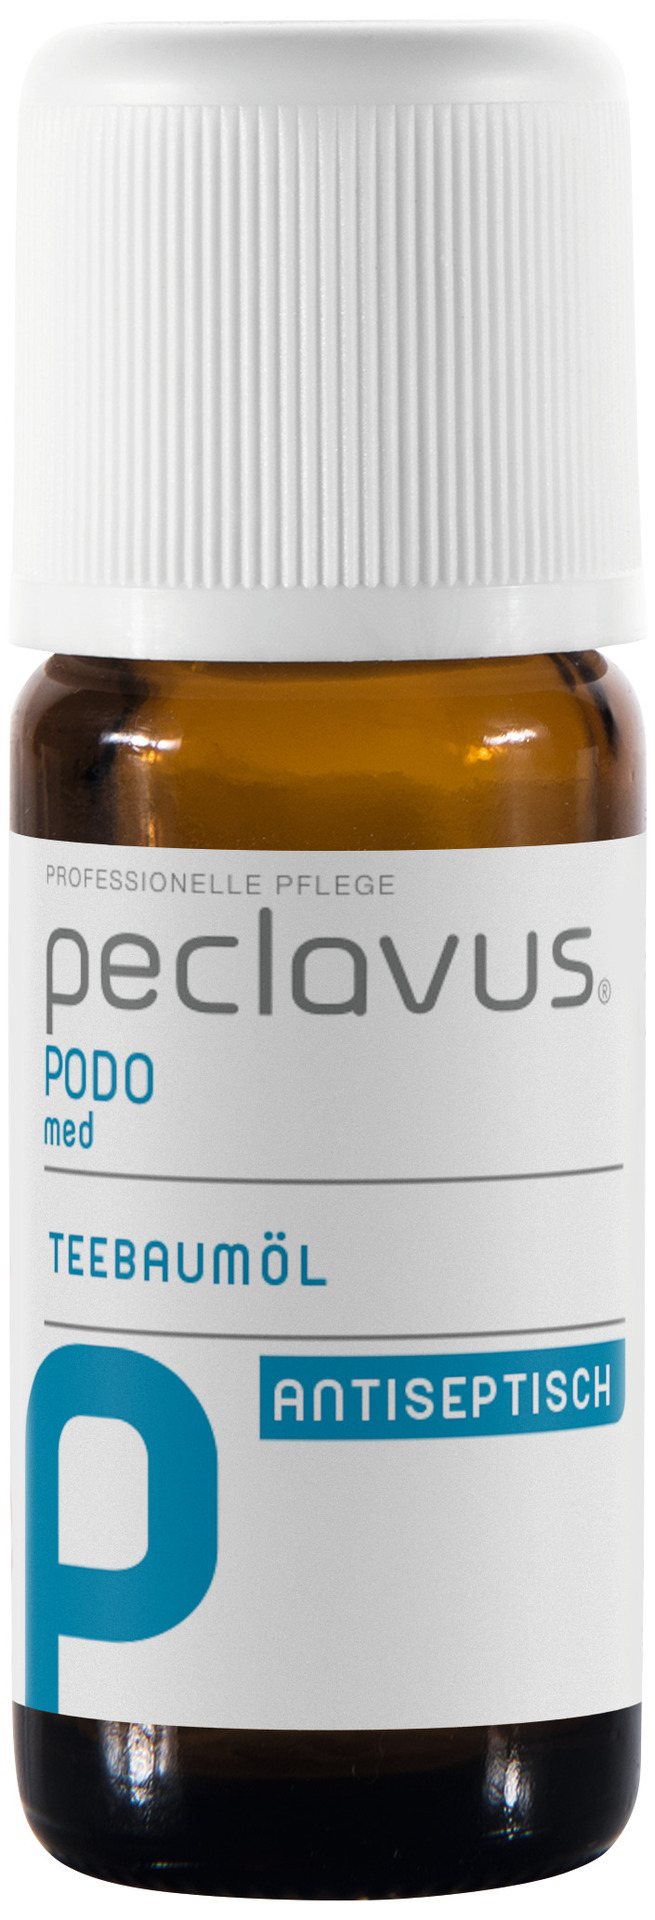 Peclavus PODOmed Teebaumöl | 10 ml